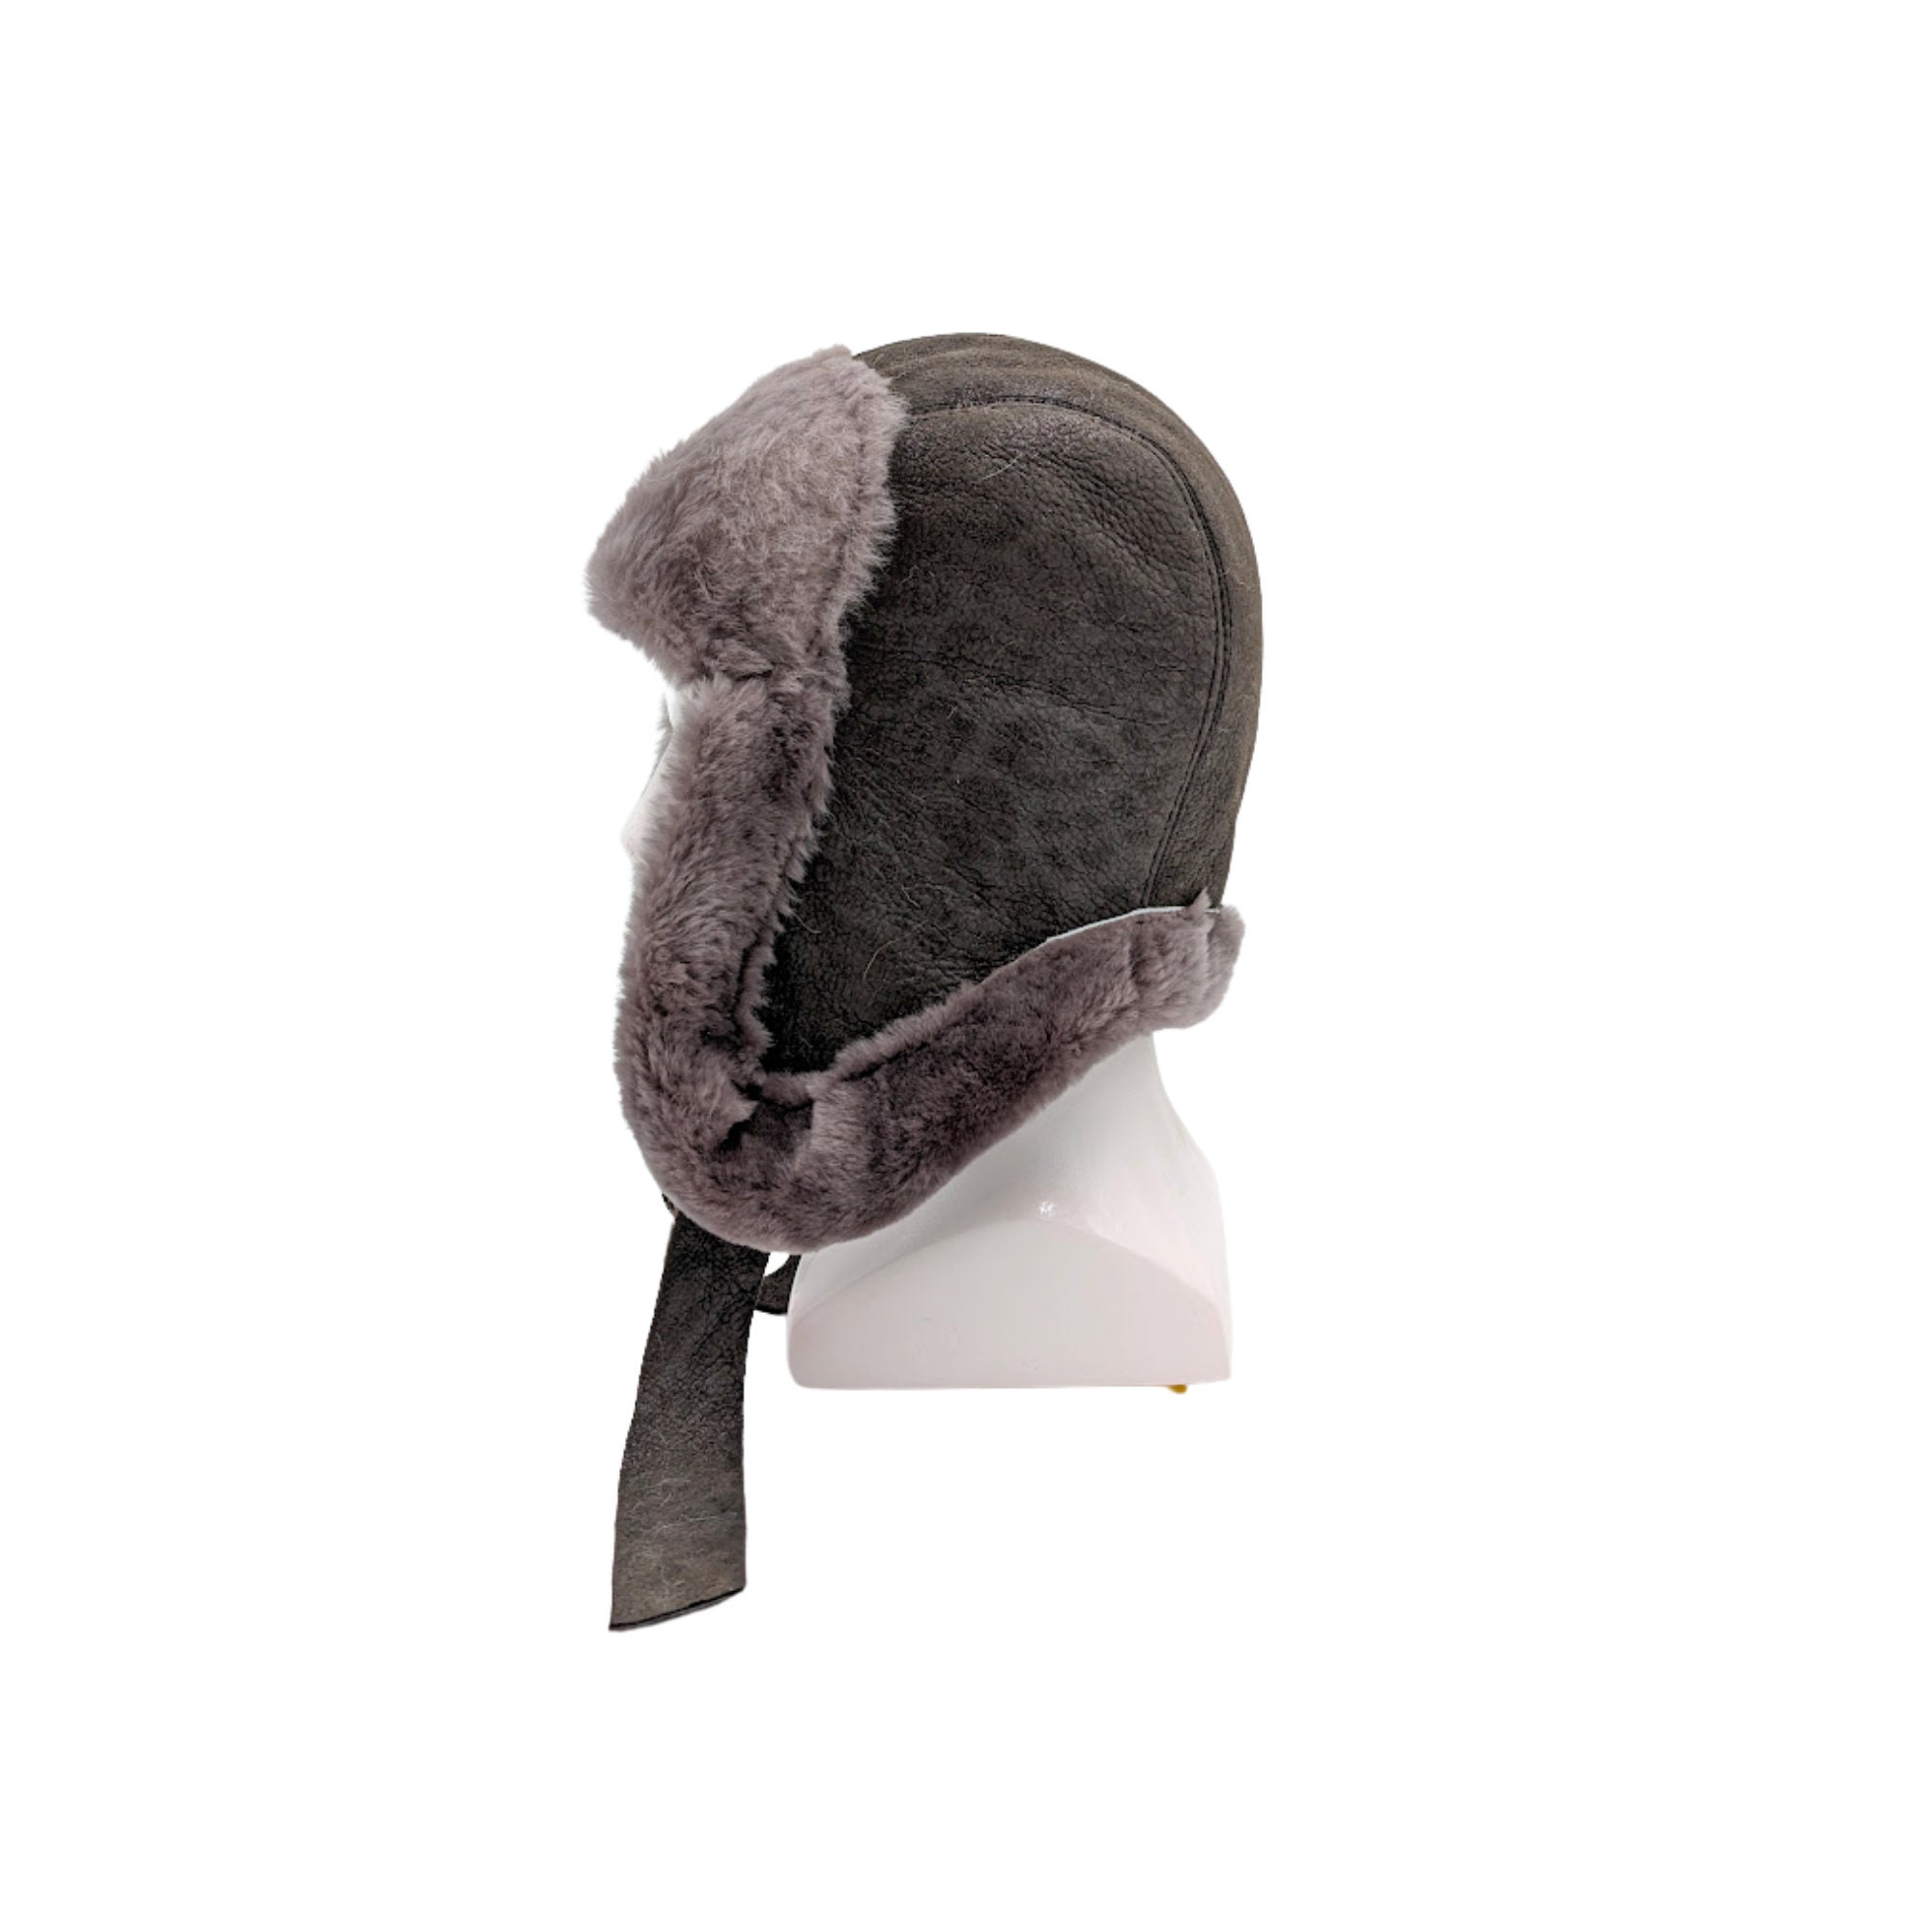 Pin by Hossein Gh on Hats  Luxury hats, Cute hats, Bucket hat fashion